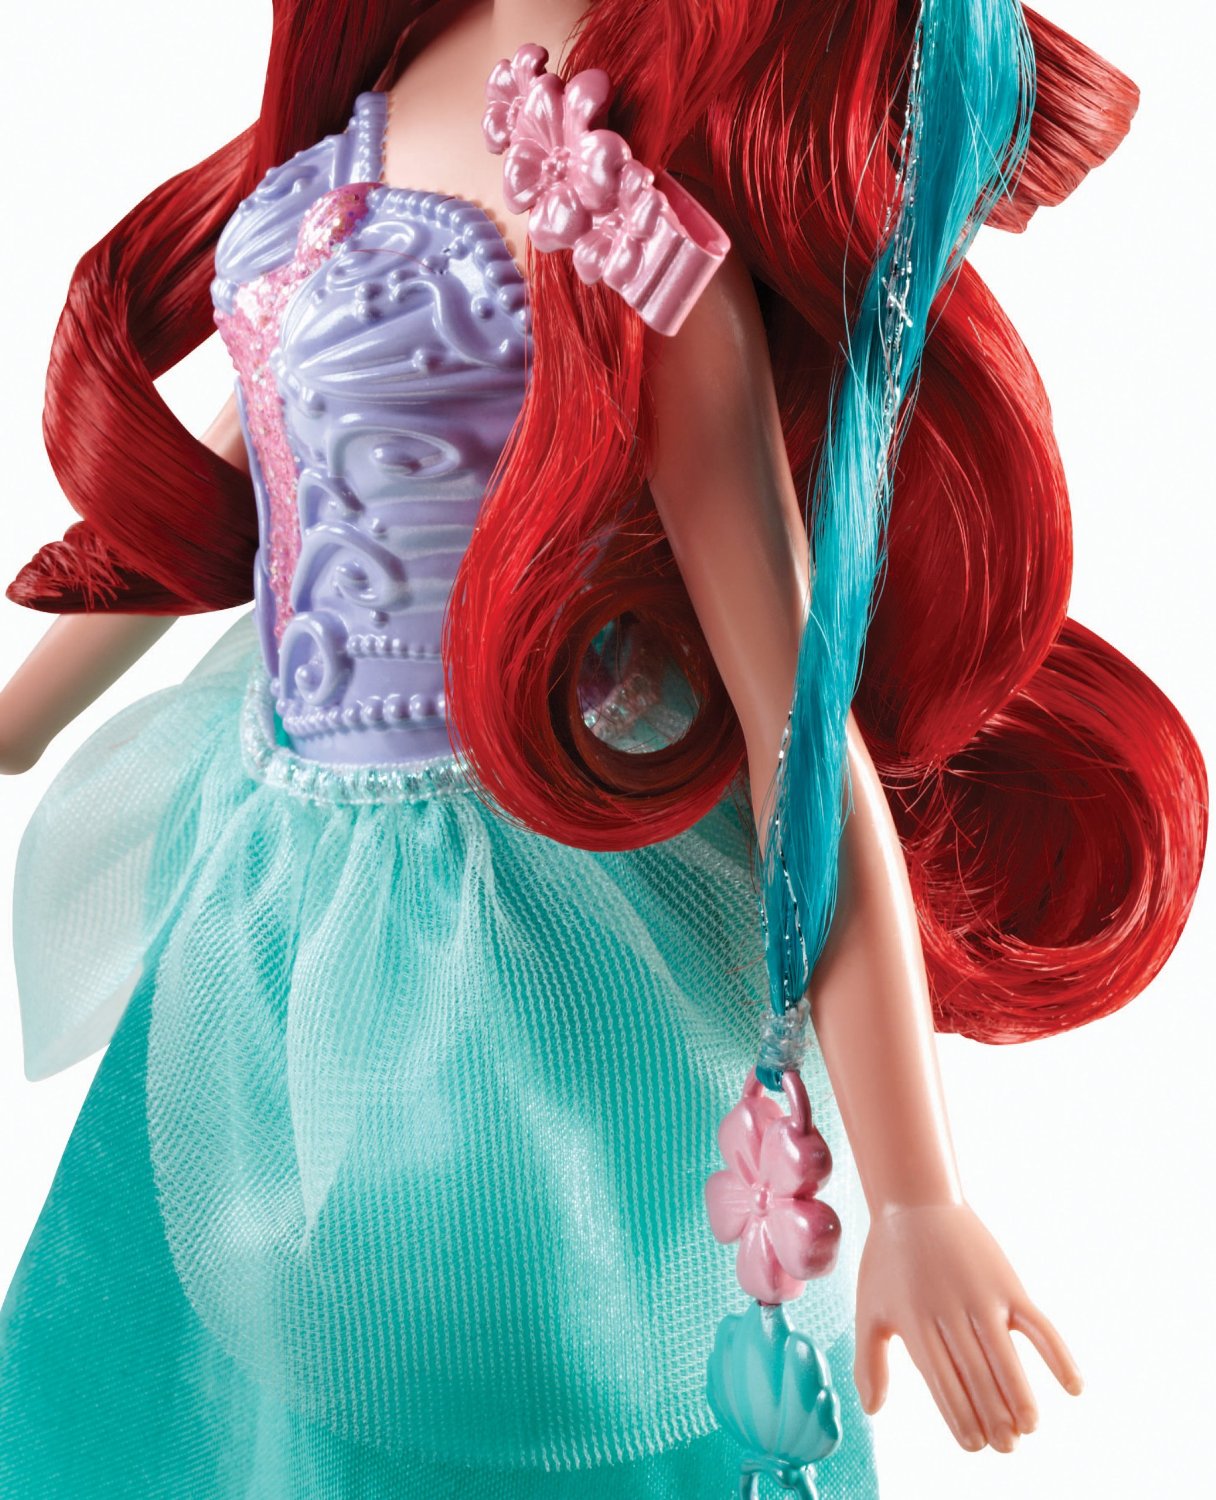 Кукла Disney Princess "Модные прически" - Ариэль купить в интернет-магазине MegaToys24.ru недорого.